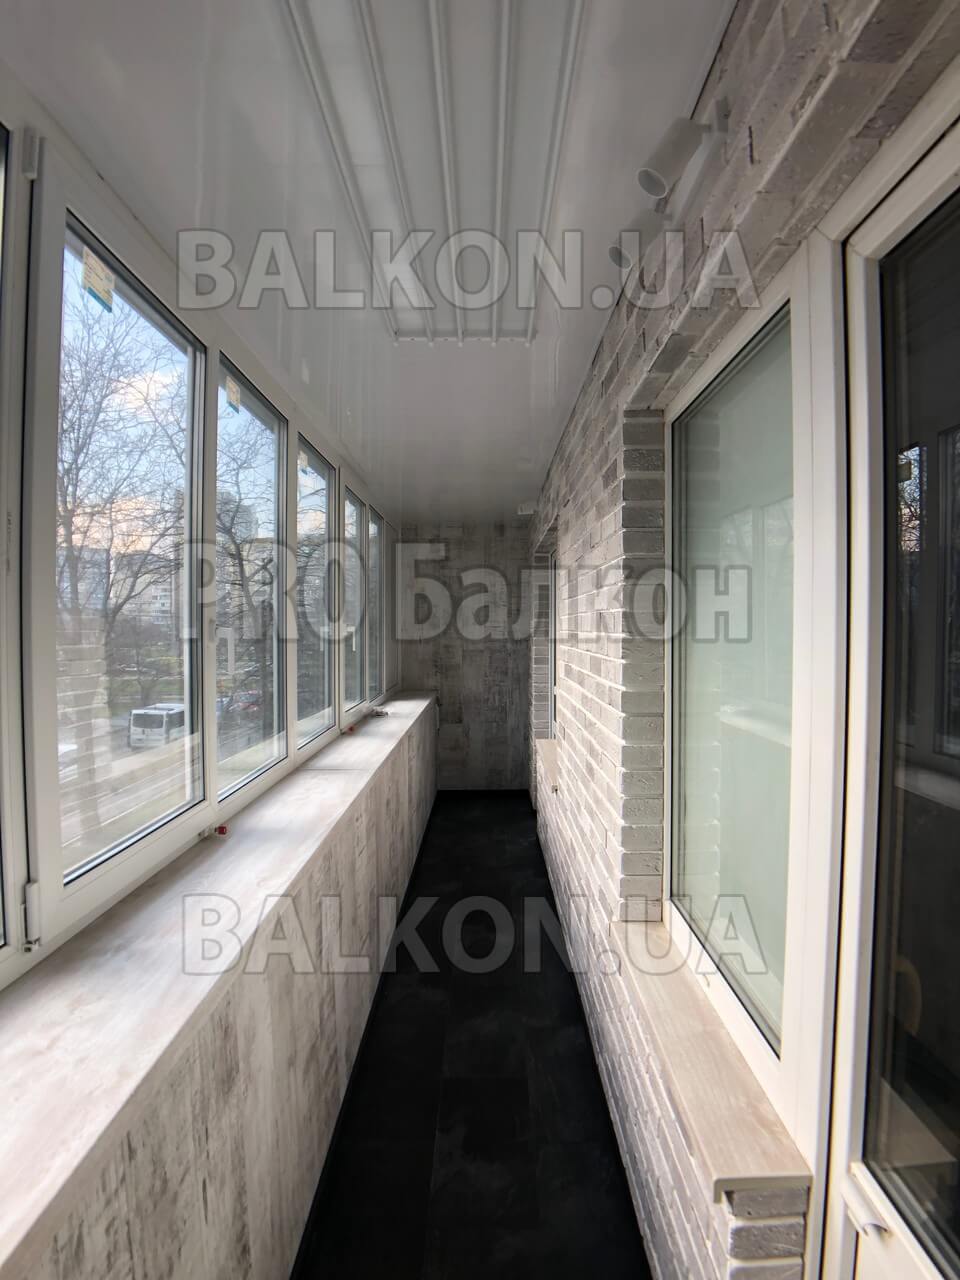 Ремонт балкона 6 метров под ключ. Отделка ламинат, декоративный камень. Киев, Маяковского 34 05